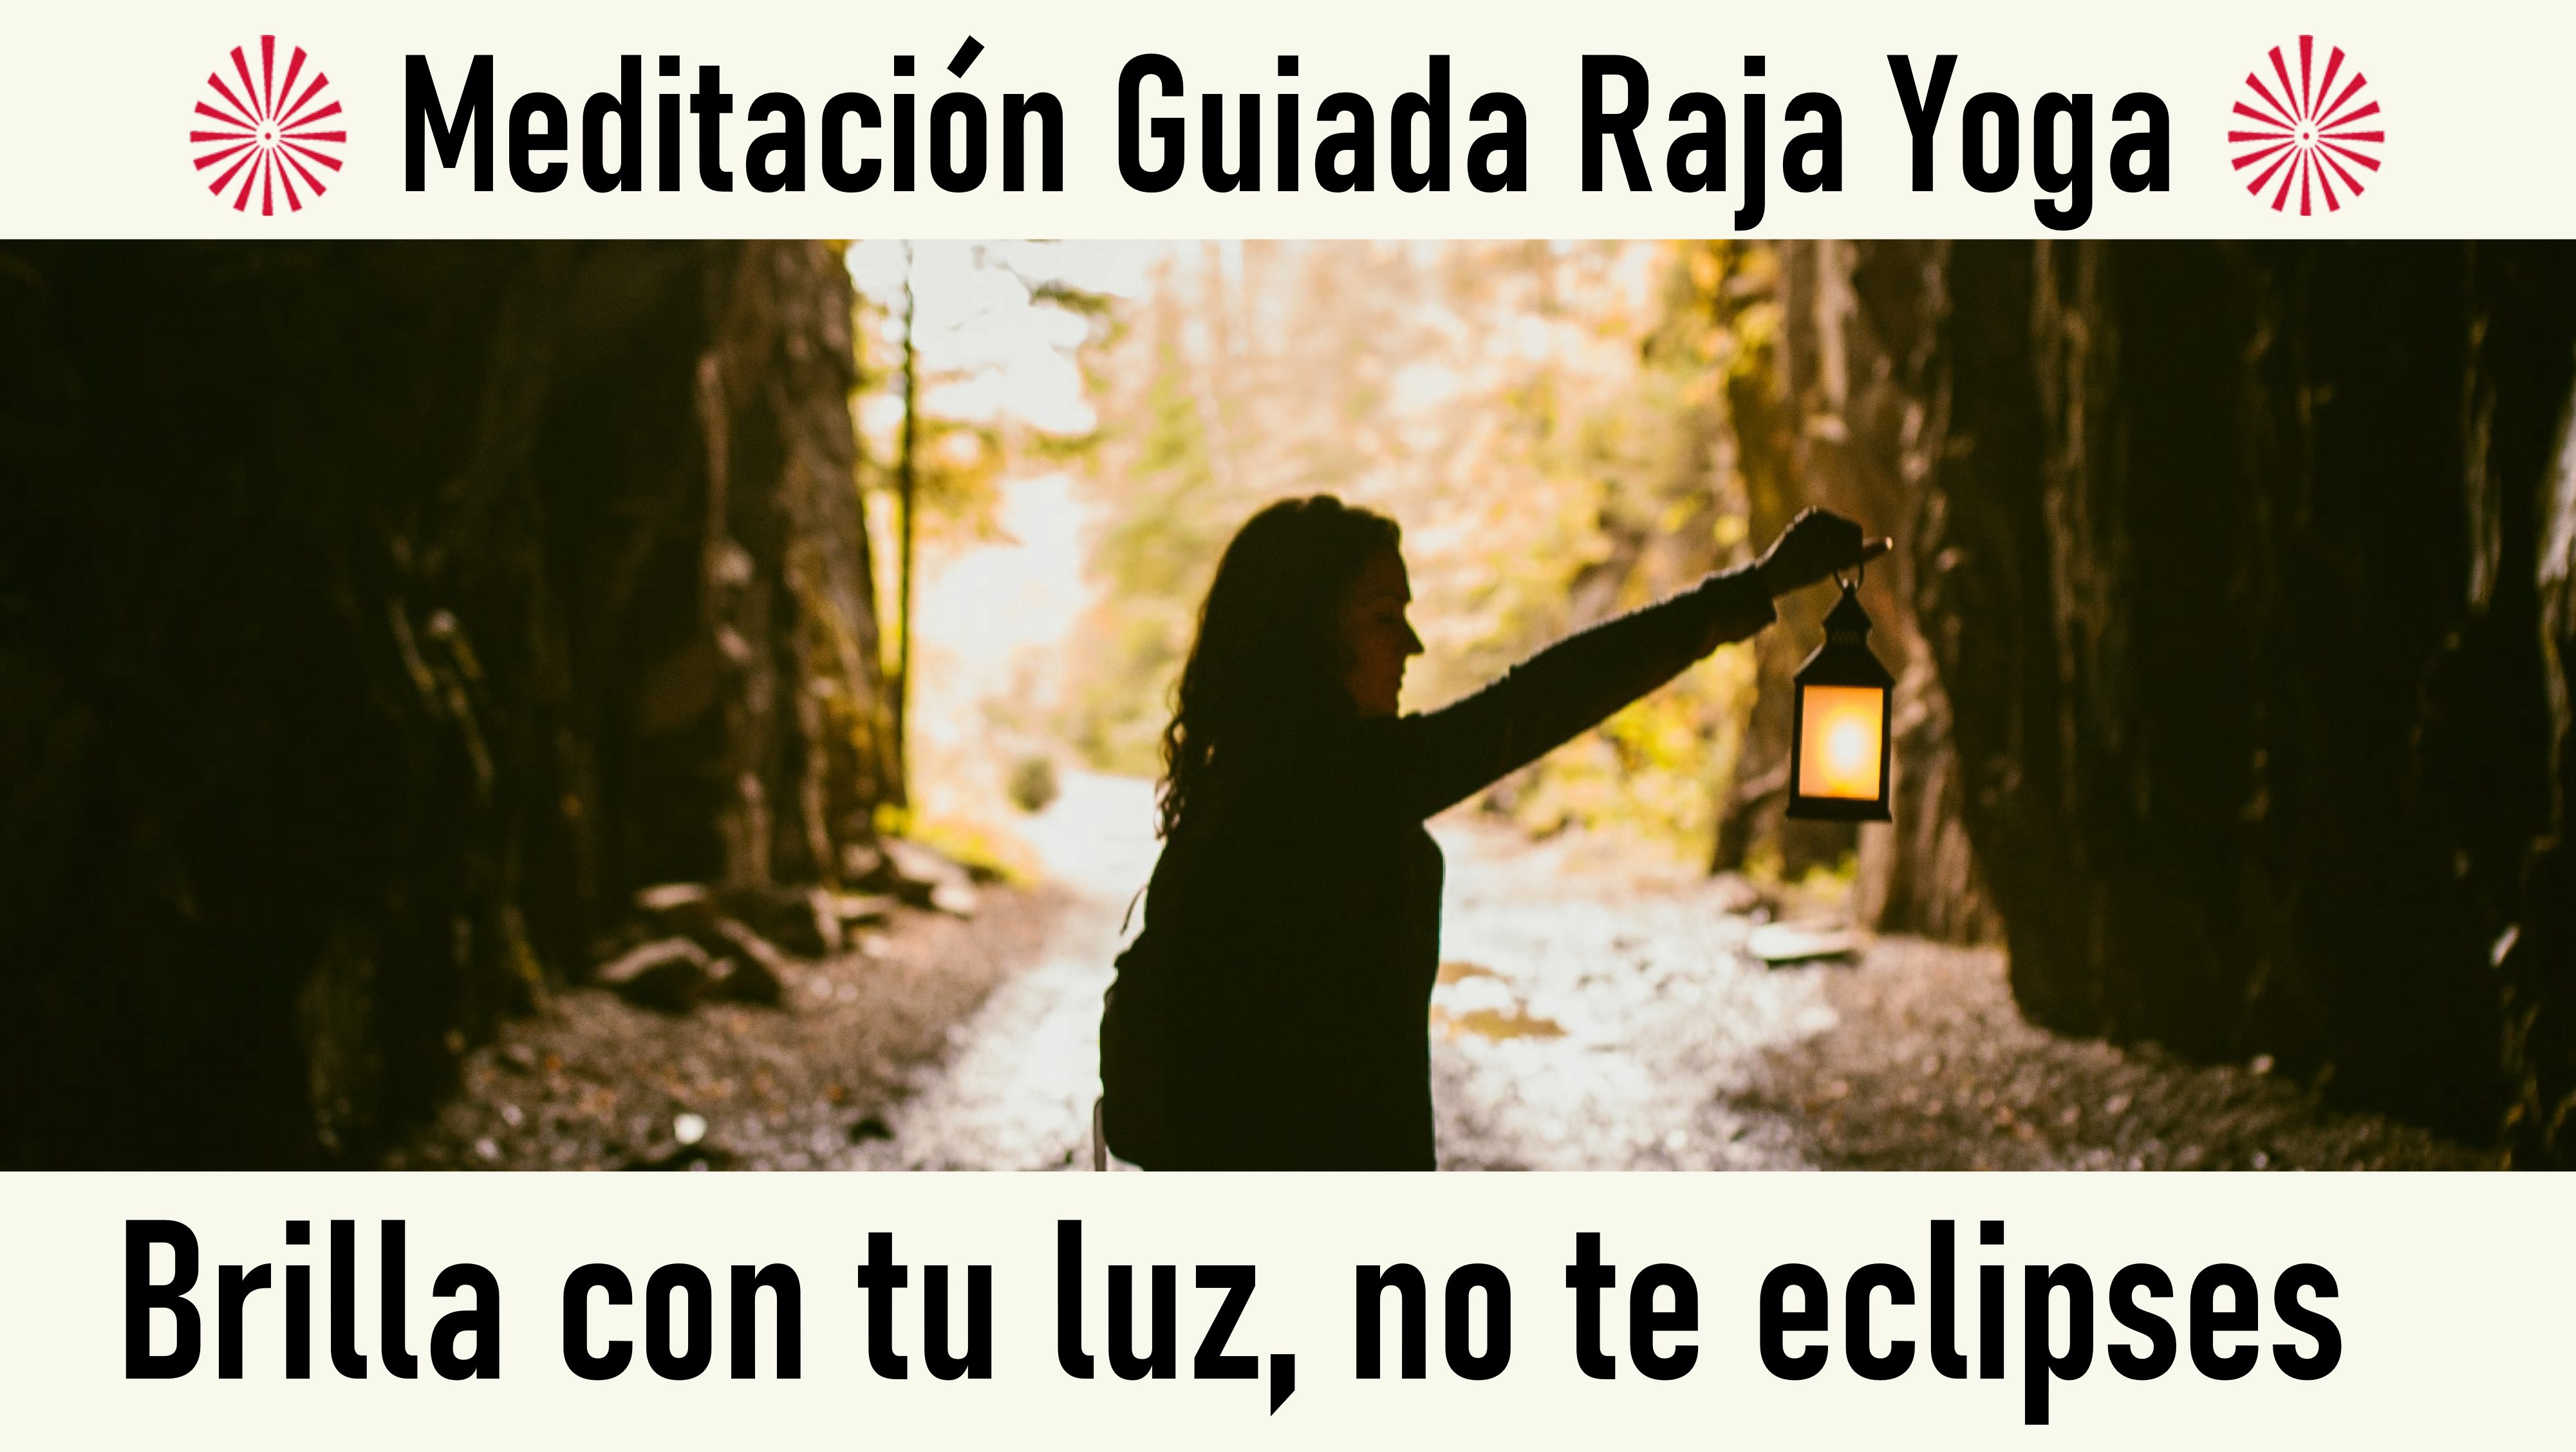 Meditación Raja Yoga: Brilla con tu luz, no te eclipses (3 Octubre 2020) On-line desde Valencia